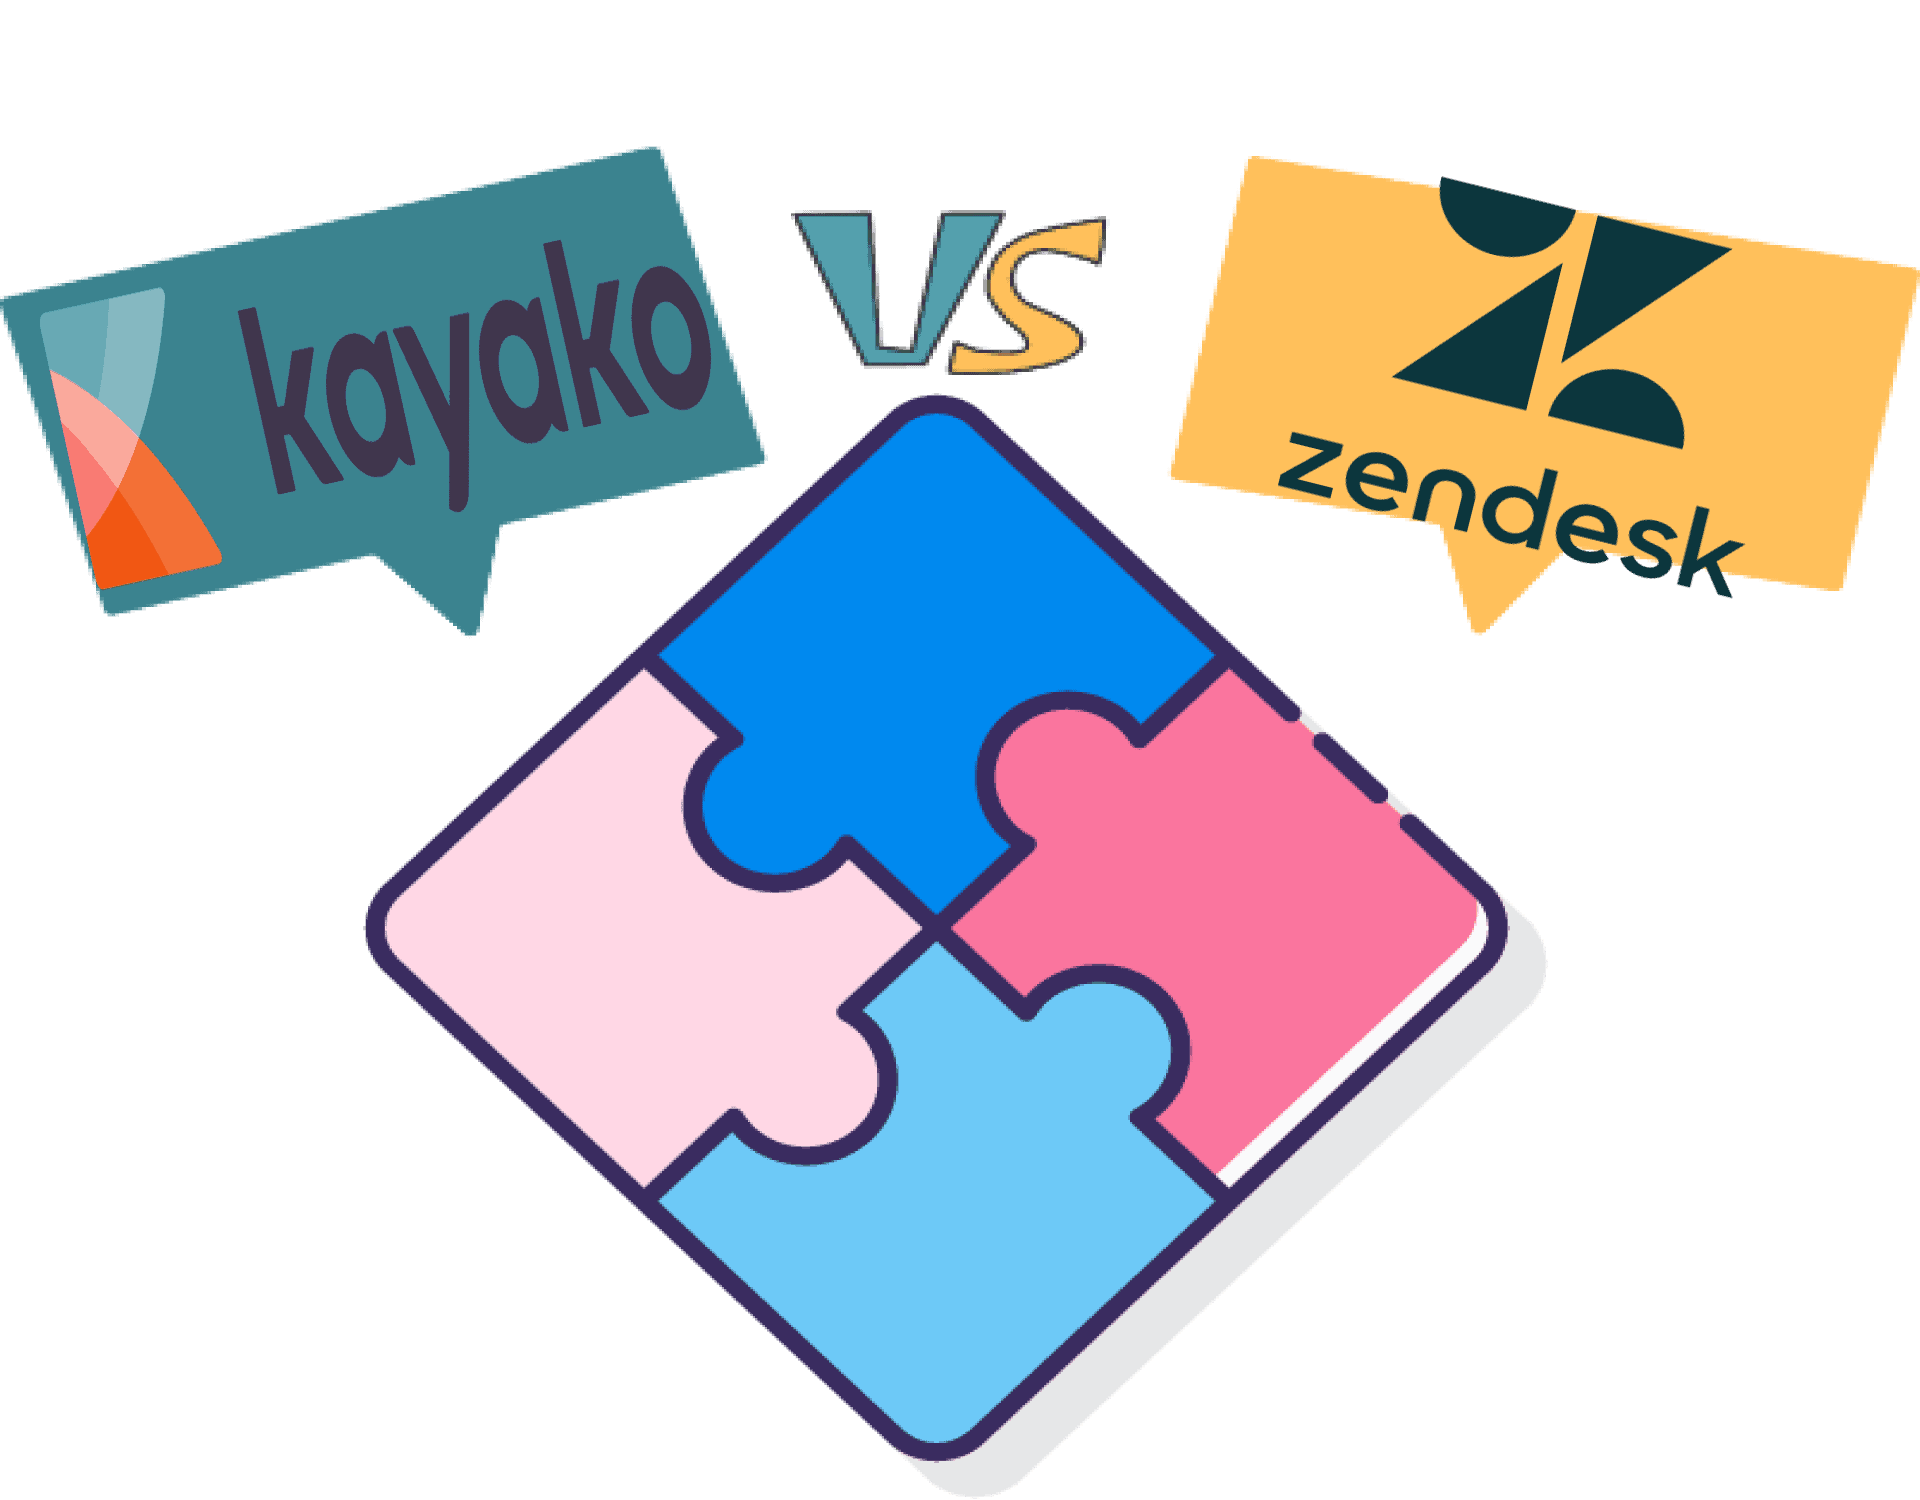 kayako vs zendesk, kayako pricing, freshdesk vs zendesk vs kayako, kayako vs freshdesk